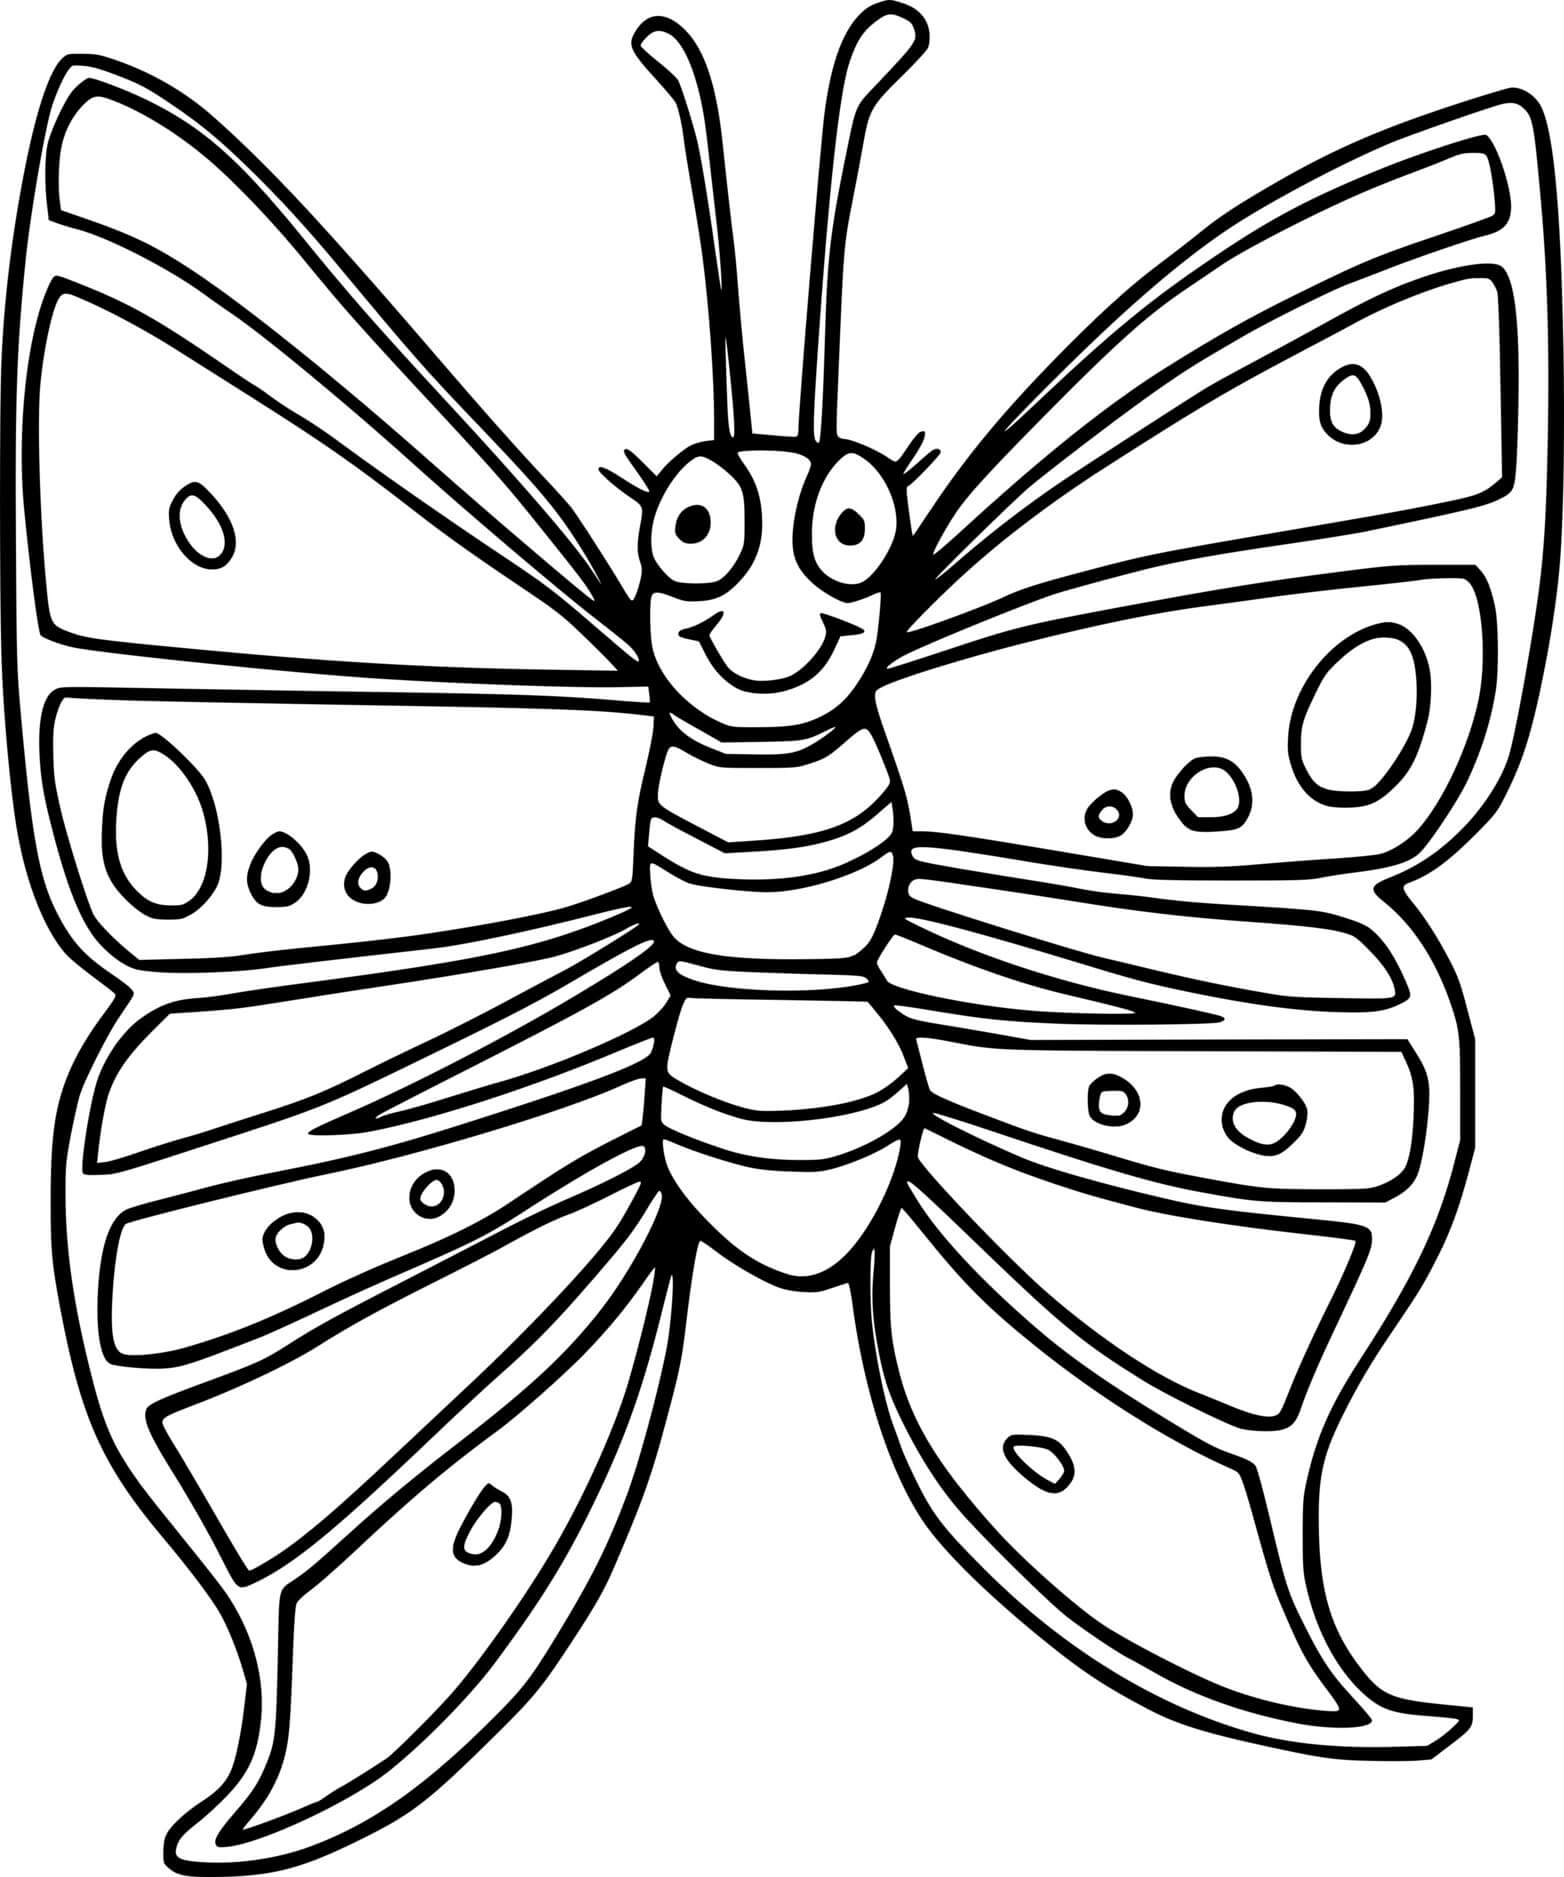 Раскраска насекомые для детей 7 лет. Бабочка раскраска для детей. Насекомые. Раскраска. Раскраска насекомые для малышей. Насекомые раскраска для детей.